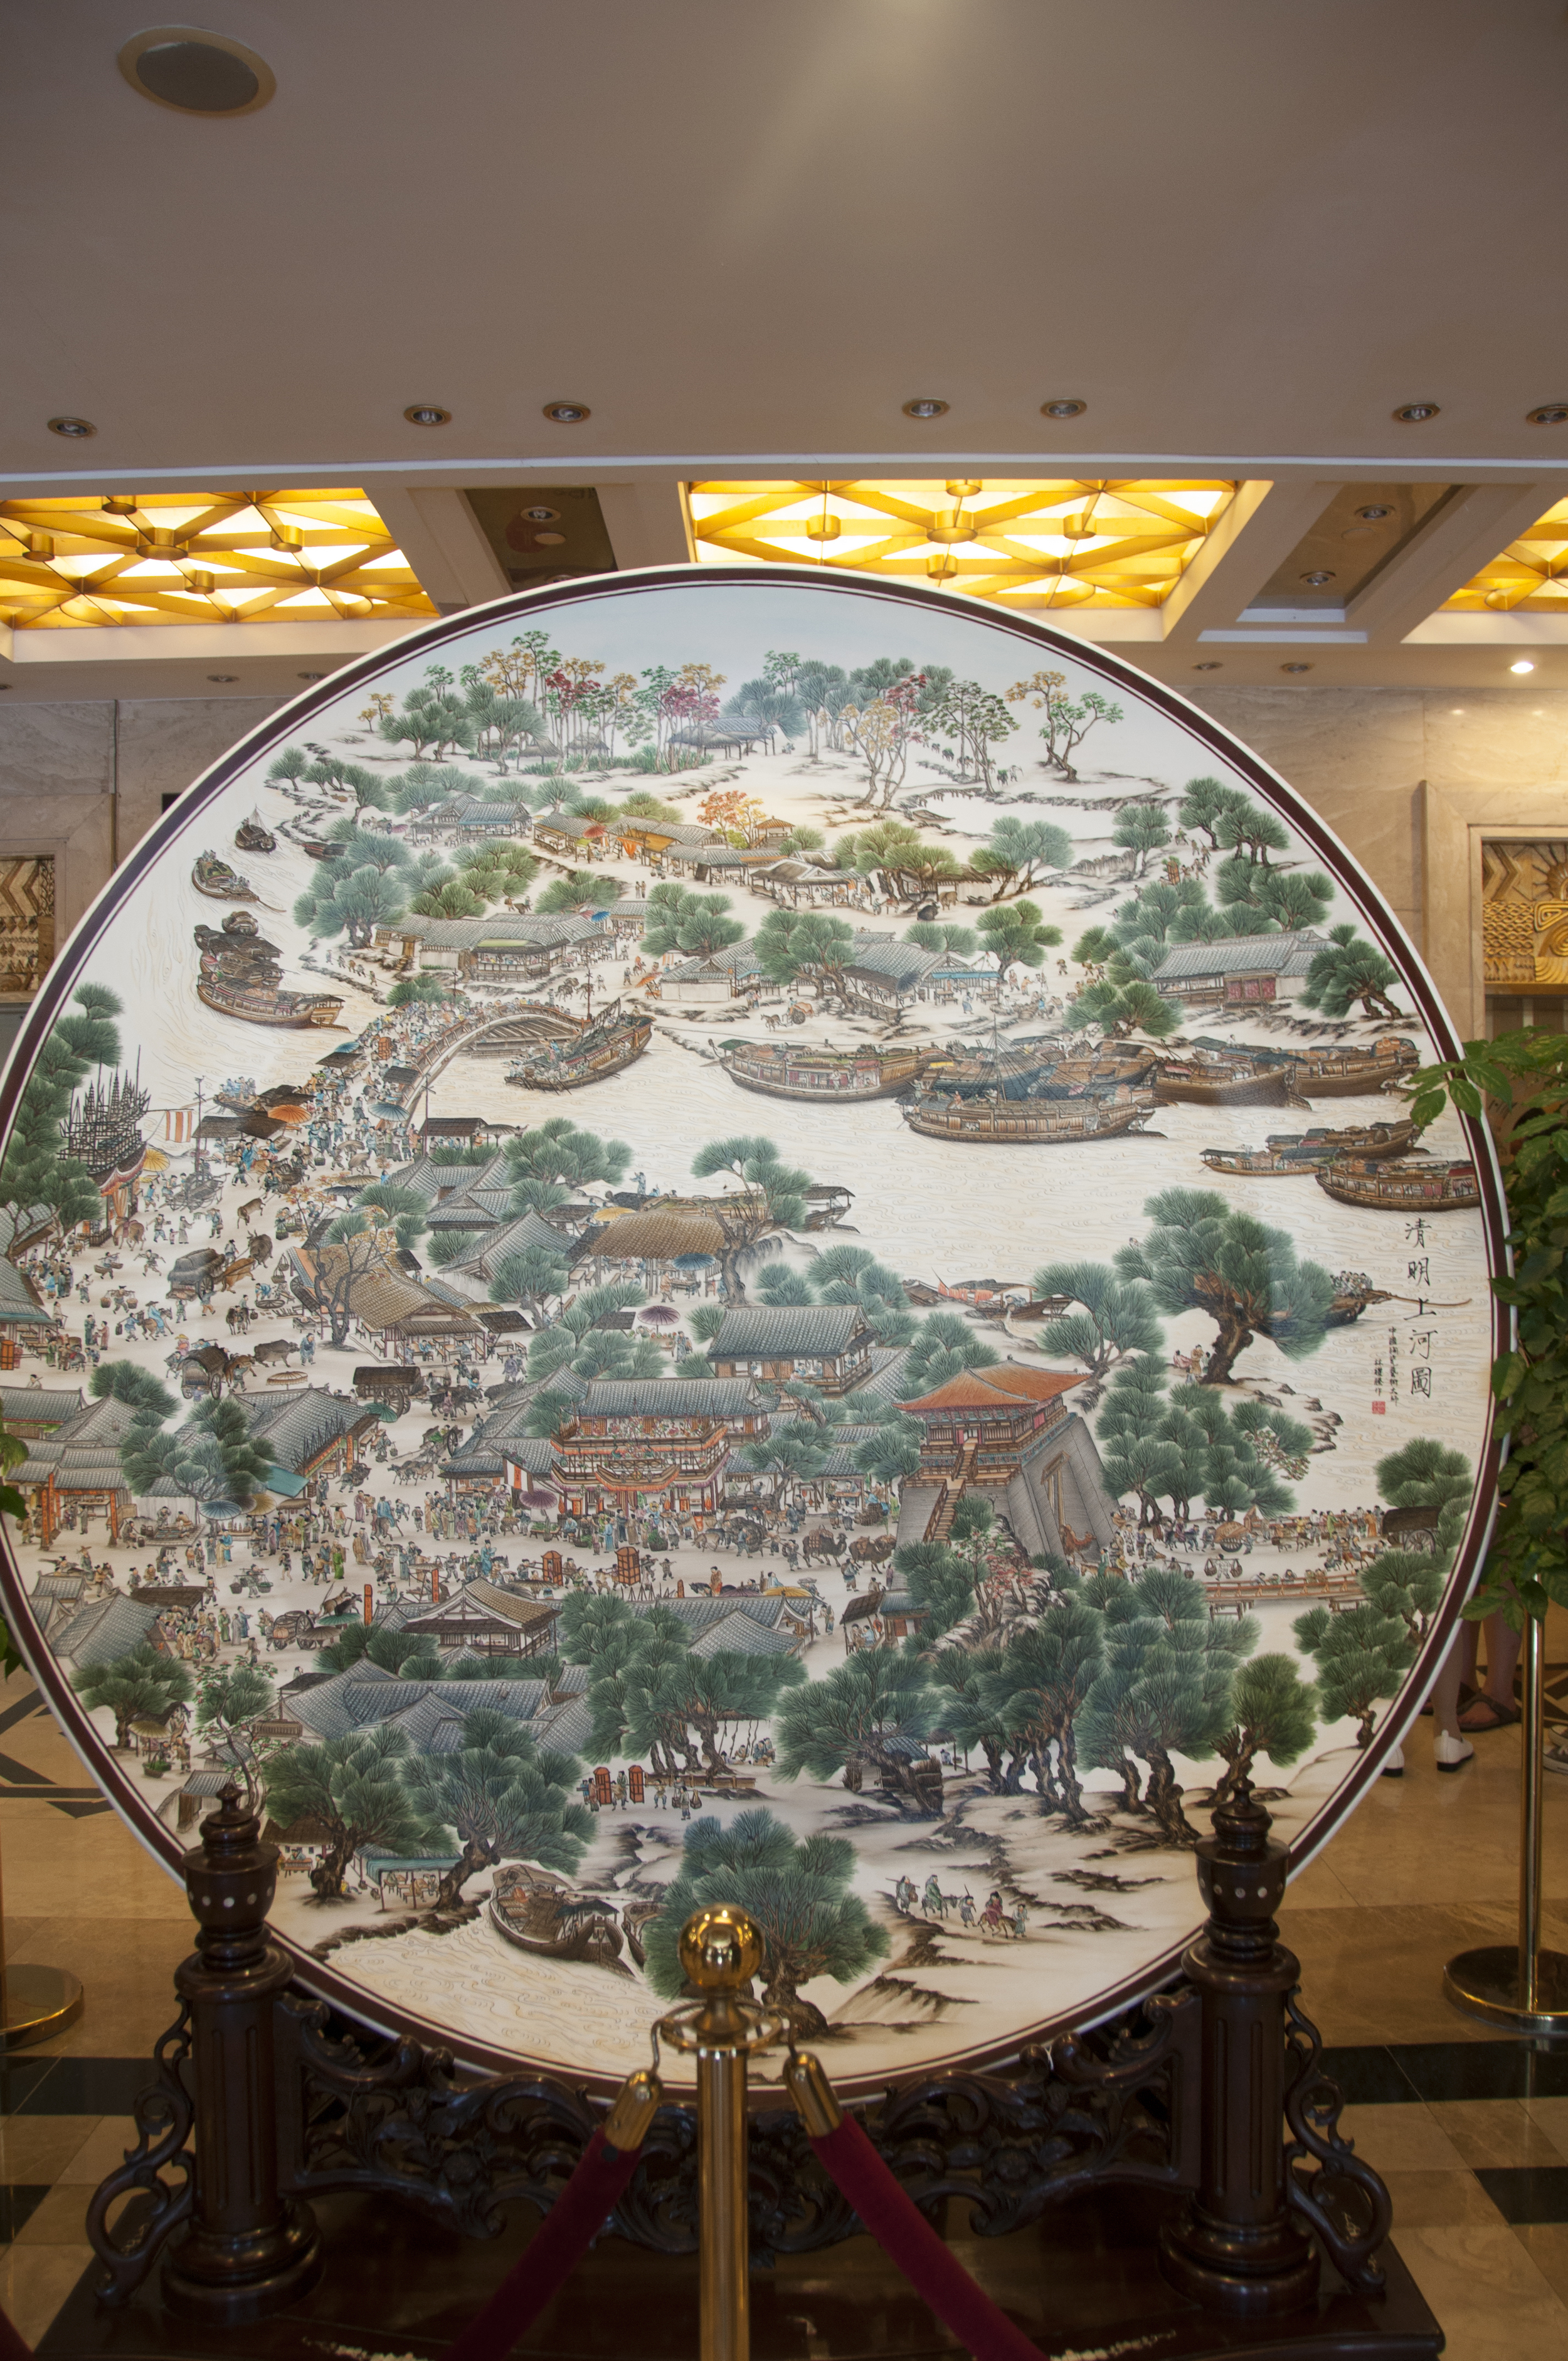 Teochew ceramic art